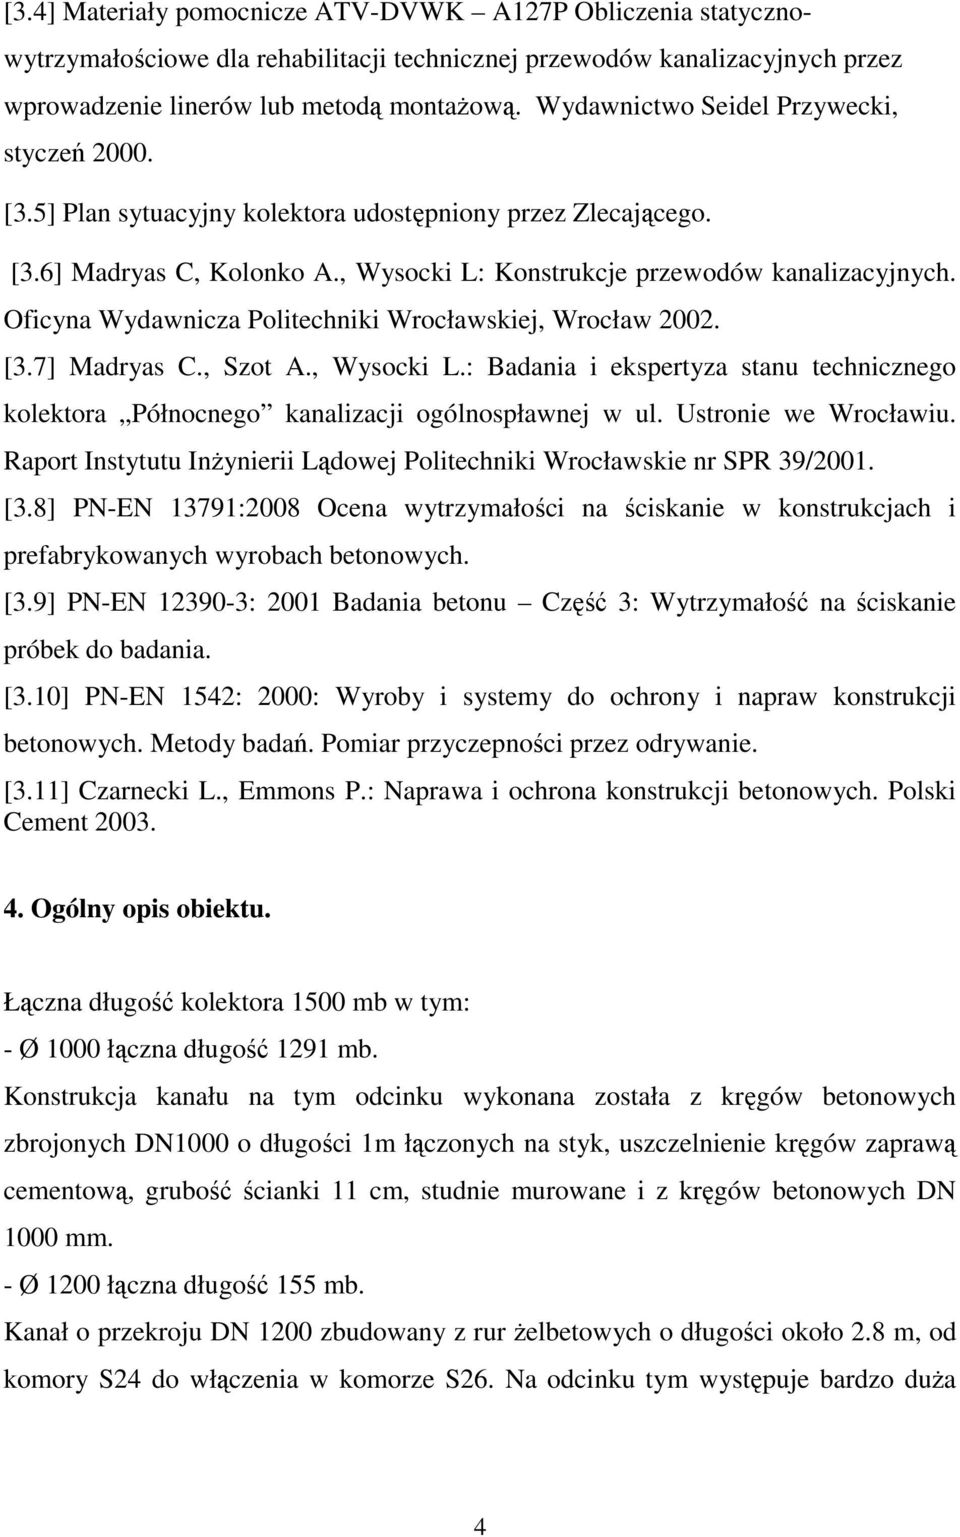 Oficyna Wydawnicza Politechniki Wrocławskiej, Wrocław 2002. [3.7] Madryas C., Szot A., Wysocki L.: Badania i ekspertyza stanu technicznego kolektora Północnego kanalizacji ogólnospławnej w ul.